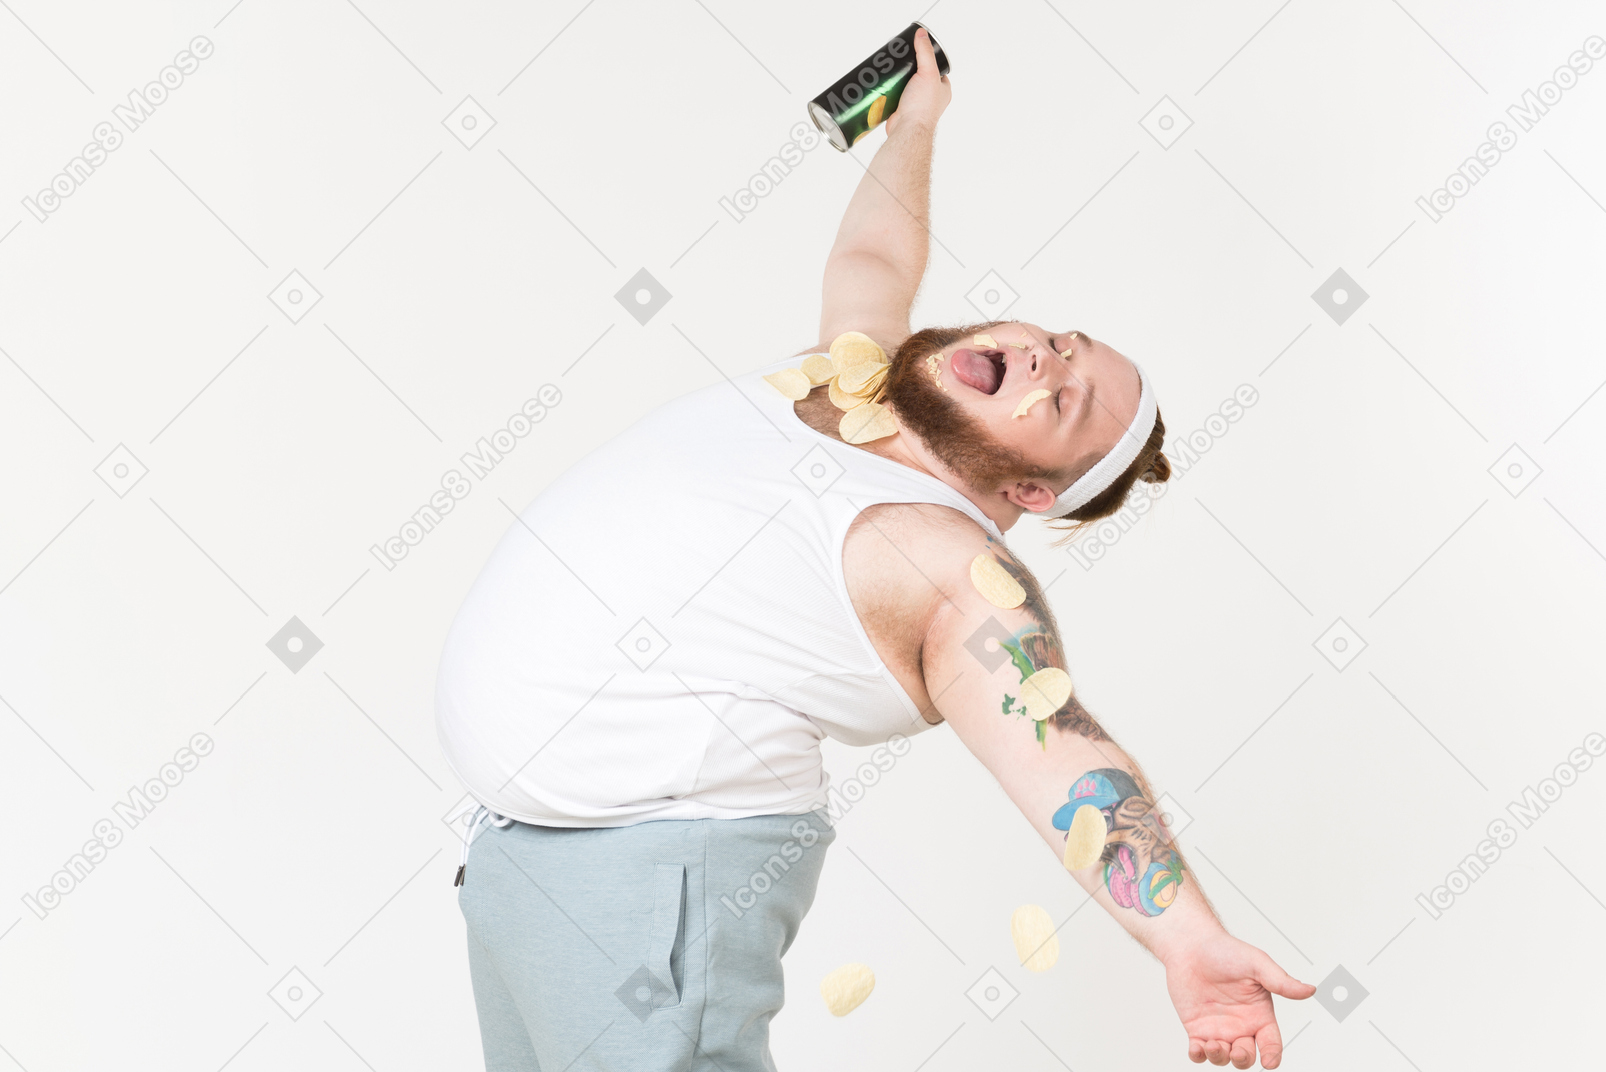 A fat man in sportswear enjoying potato chips